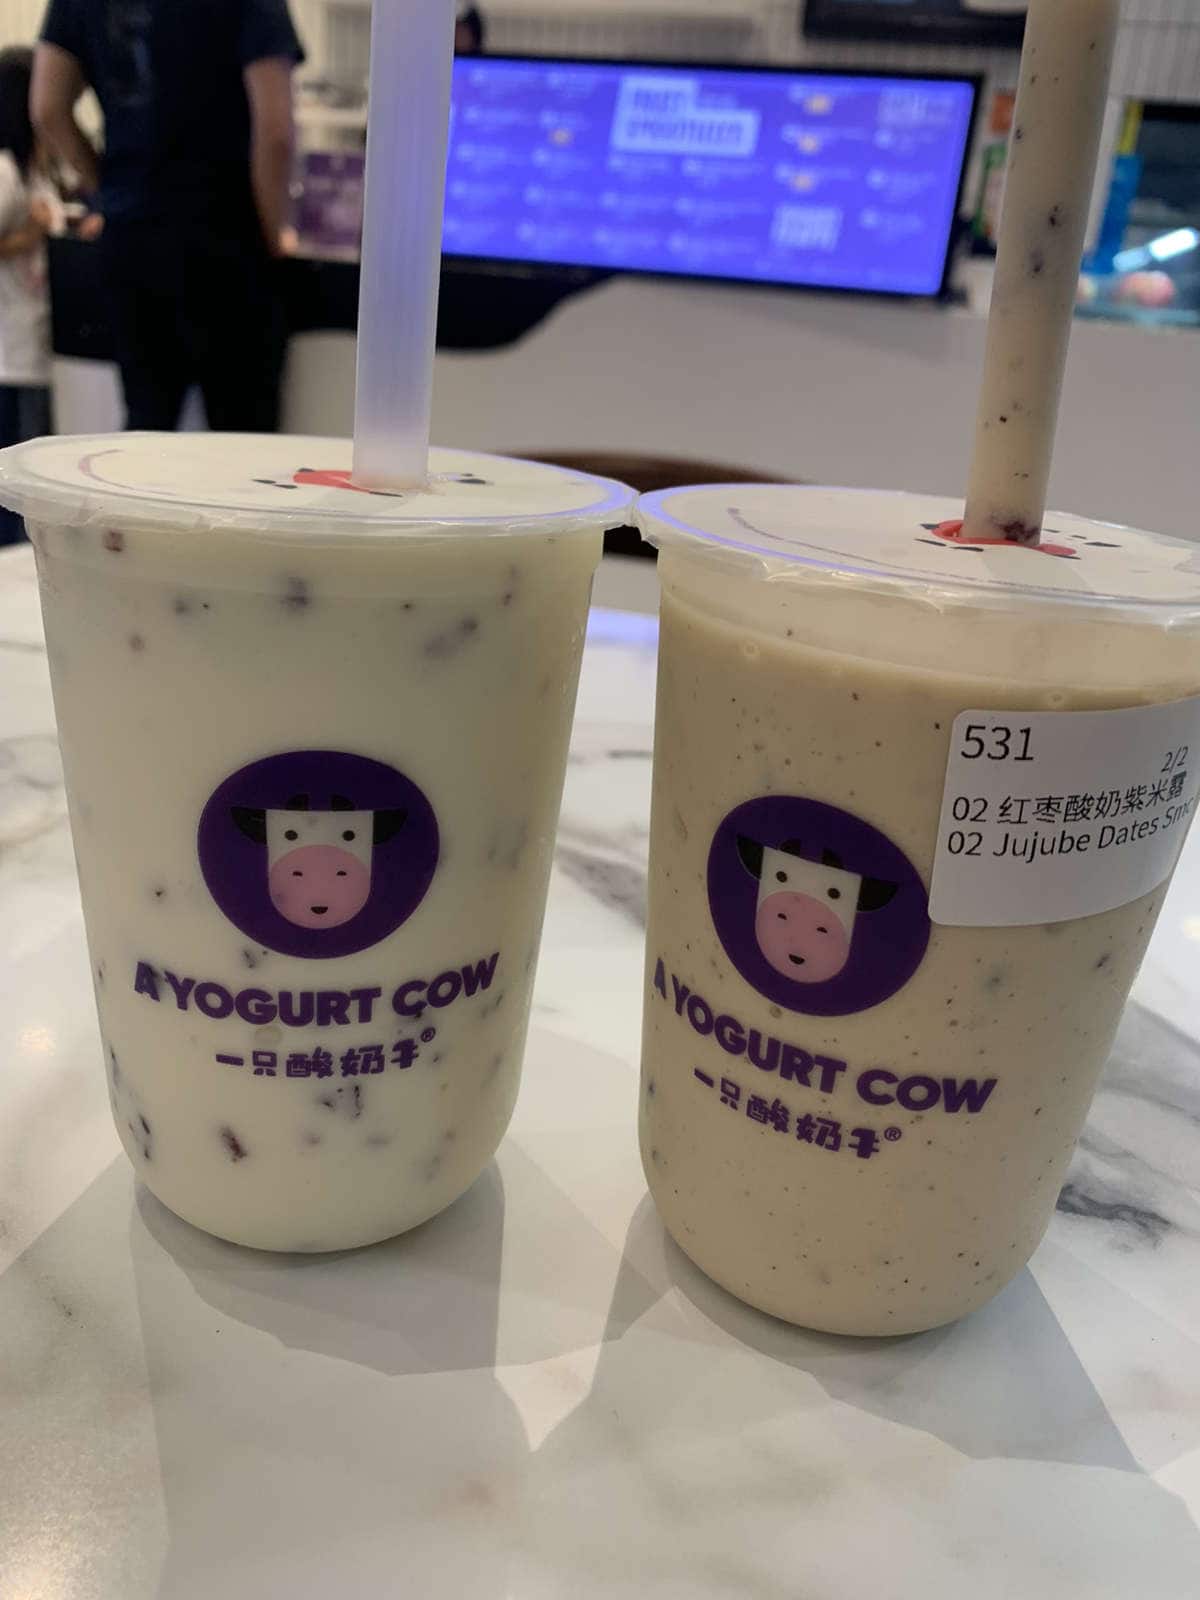 Cow yogurt Blue Cow